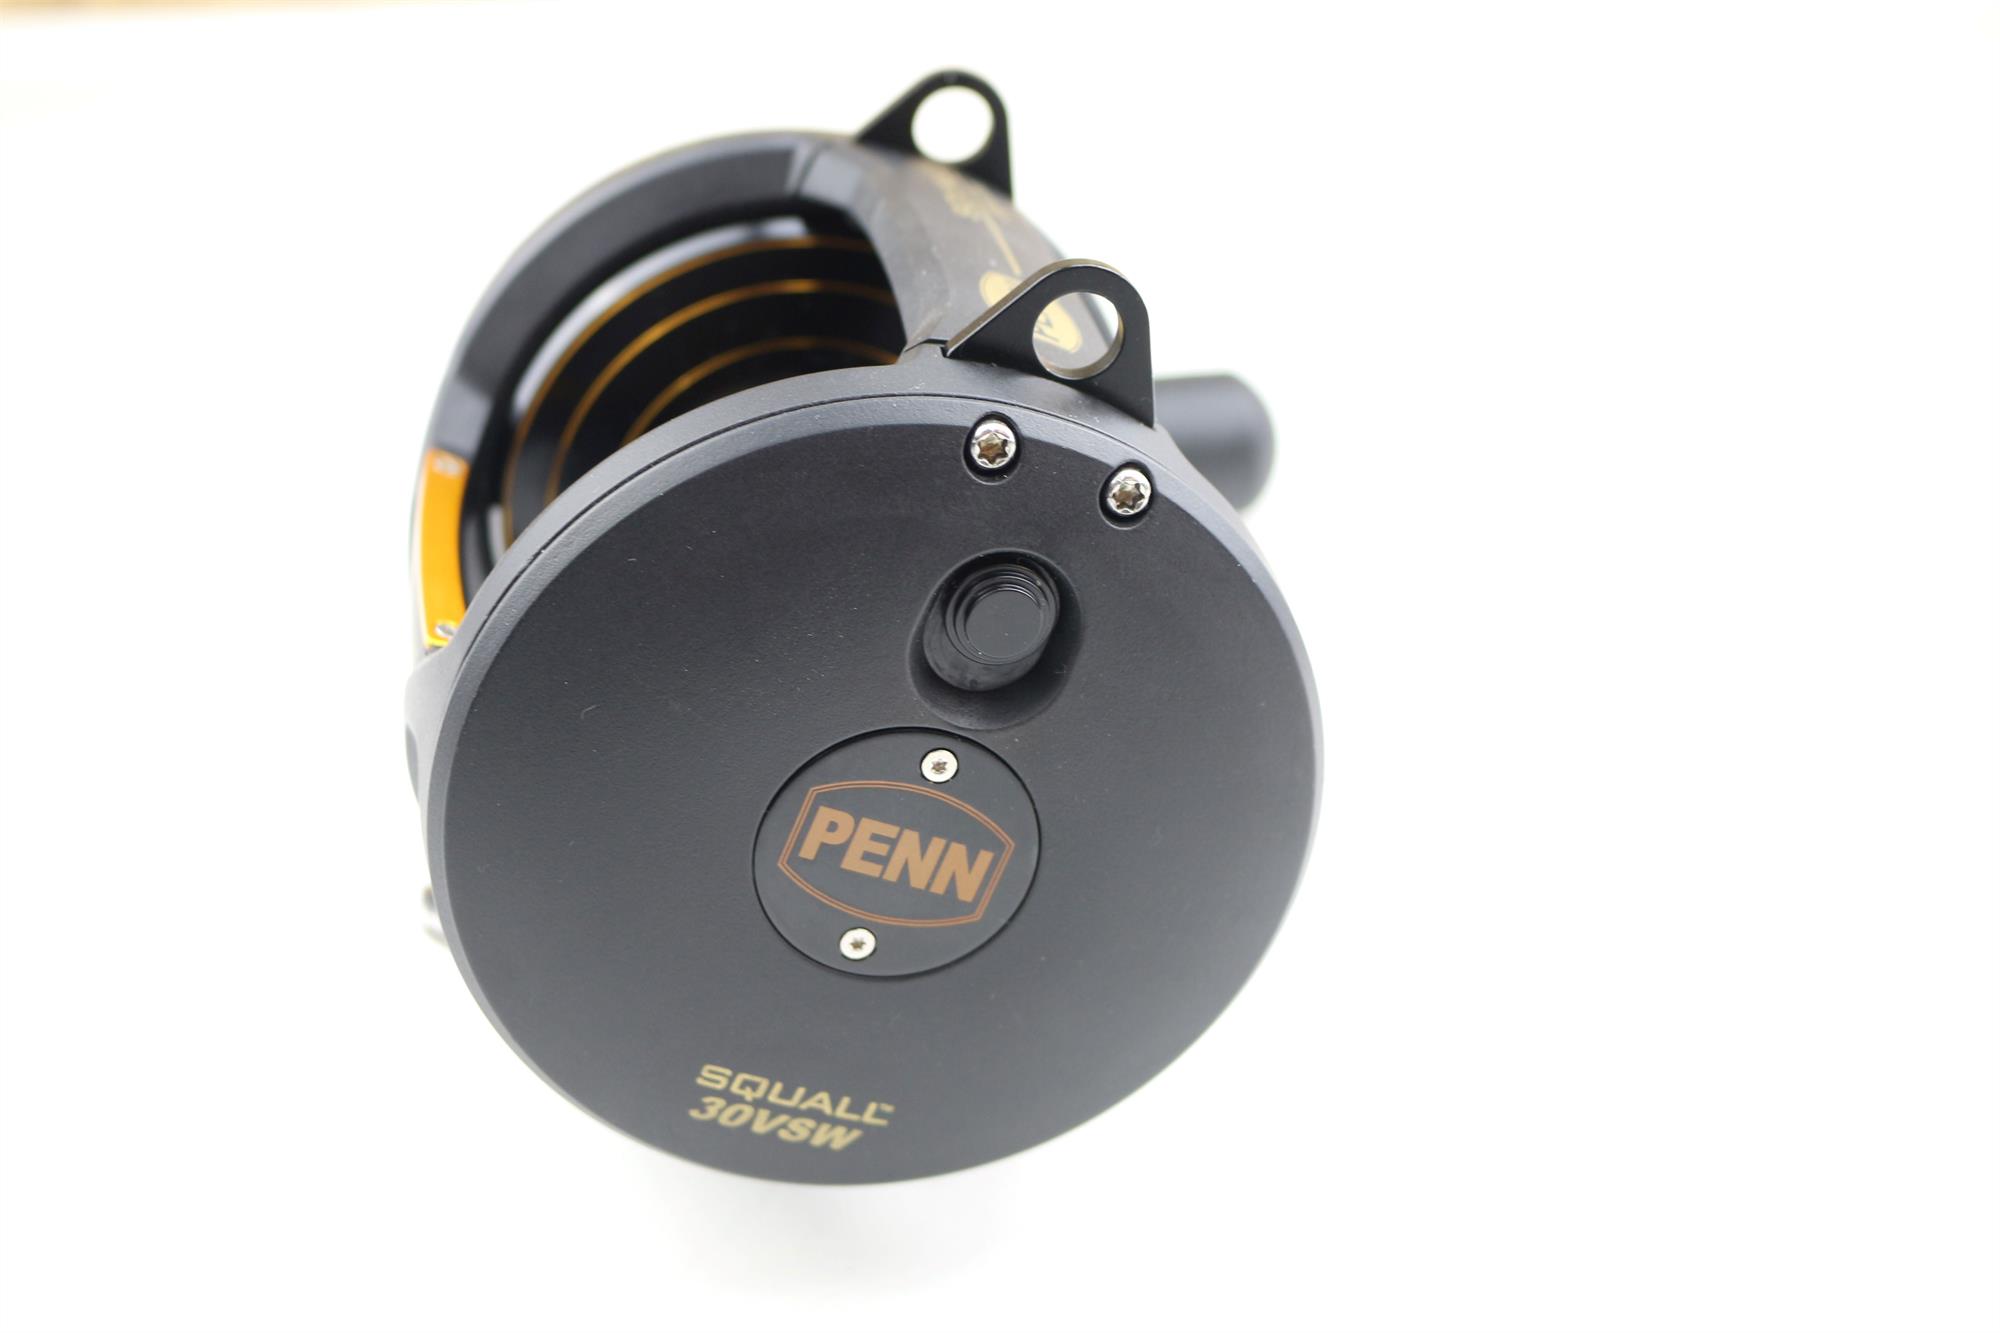 Penn Squall Lever Drag 2 Speed Reel